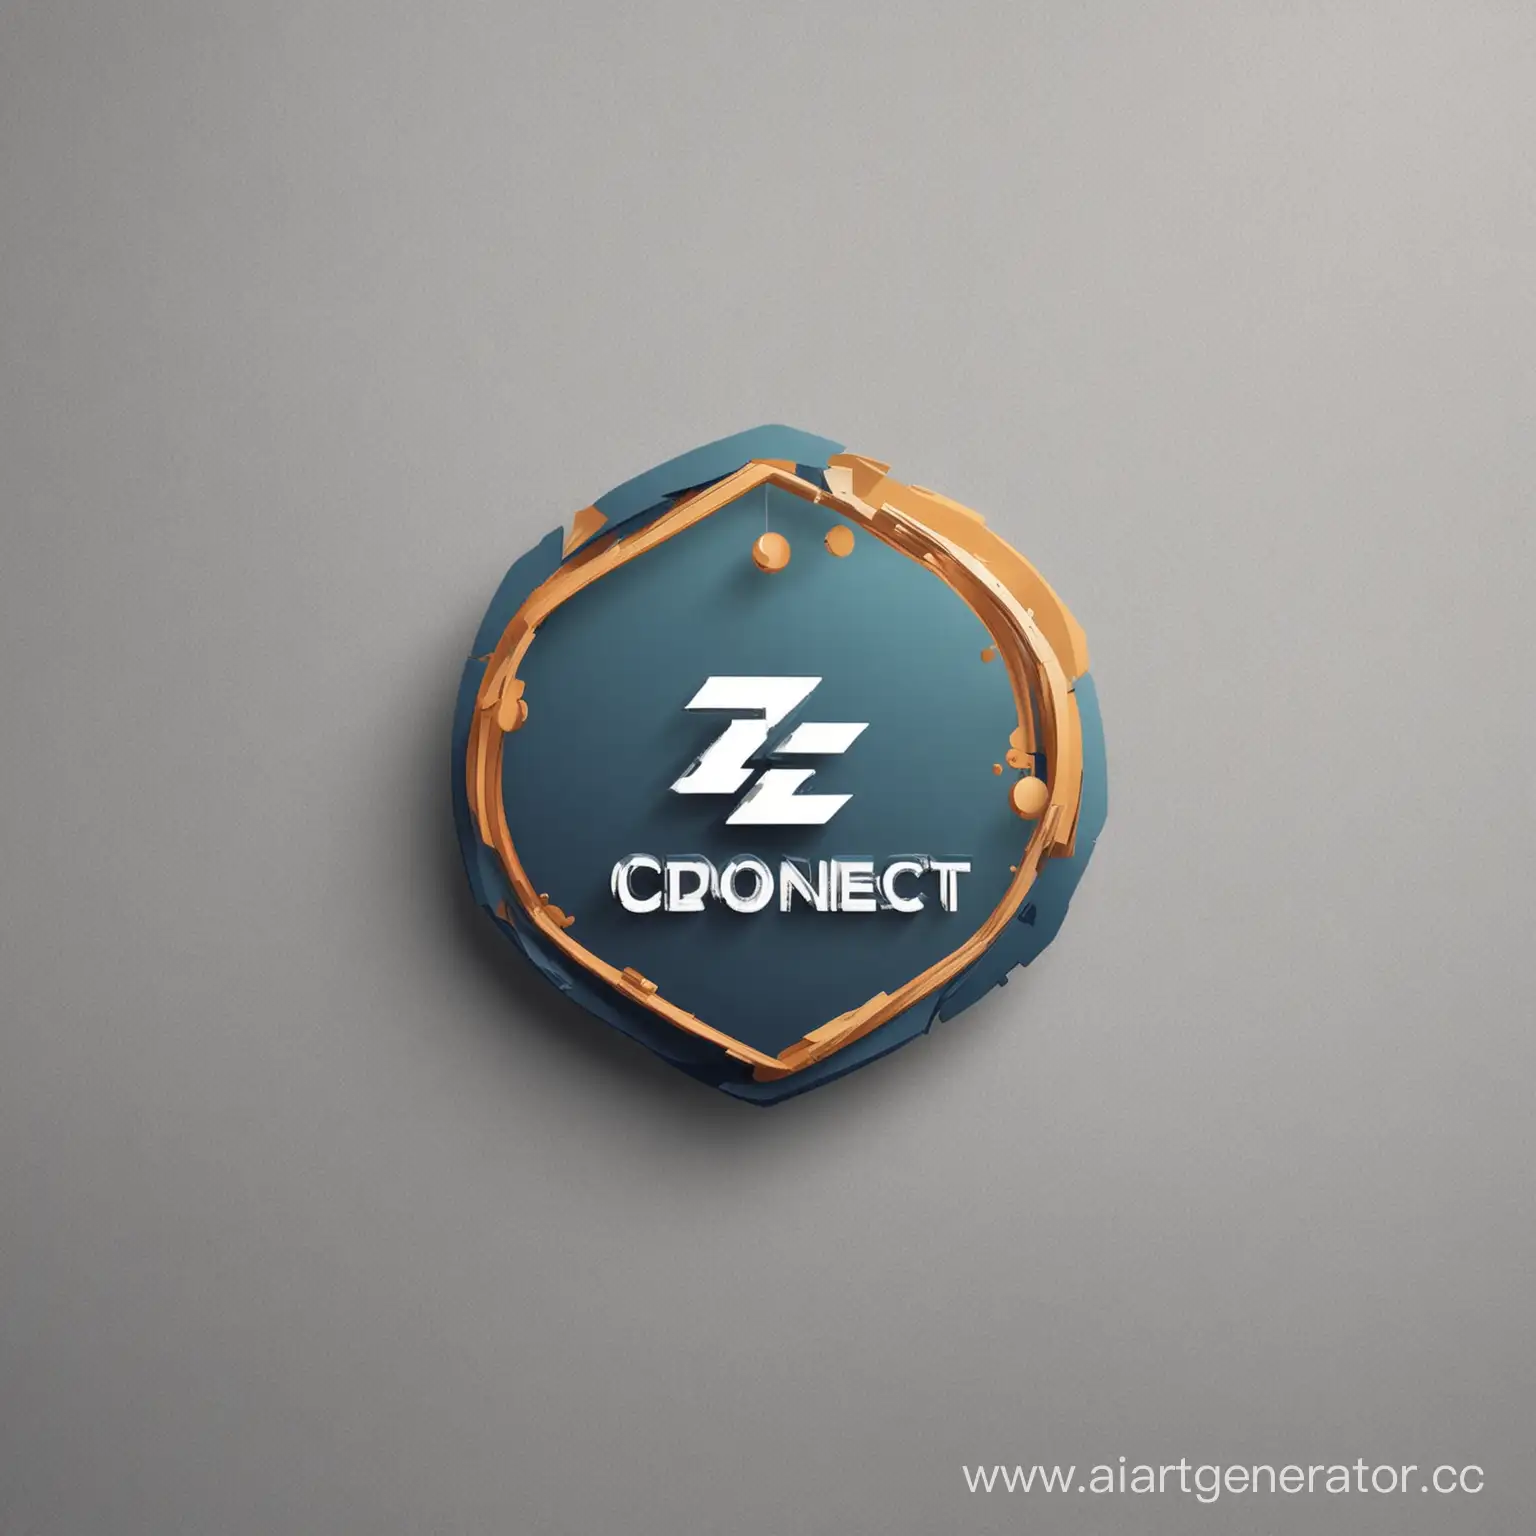 логотип для паблика в вк связанное с фрилансом и бизнесом. Название бизнеса "Biz connect" 